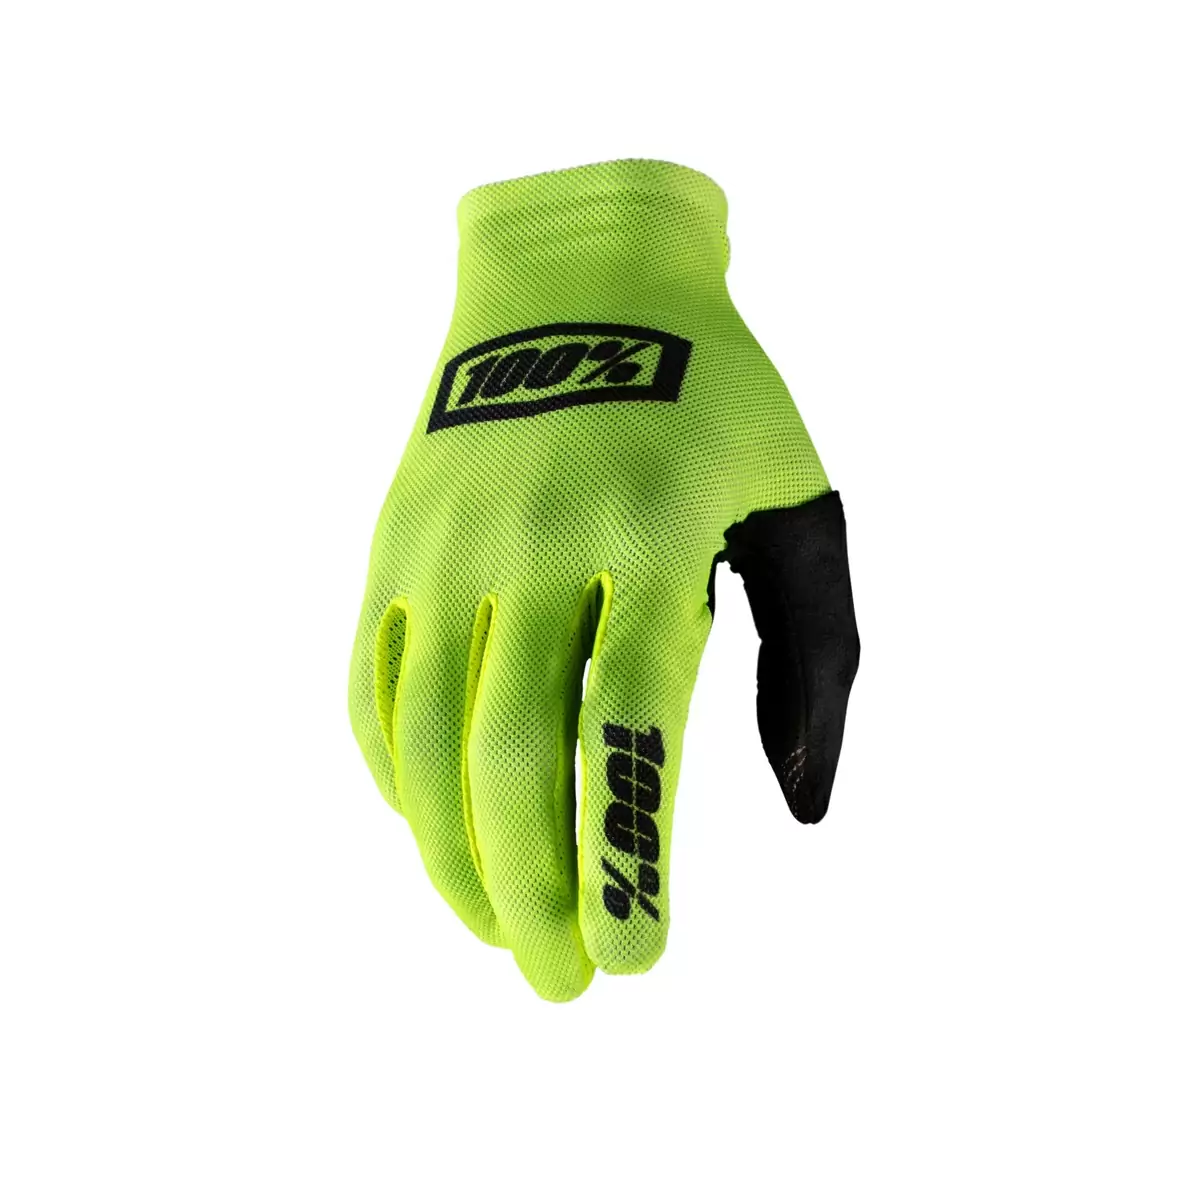 Mtb Gloves Celium Neon Yellow Size S - image